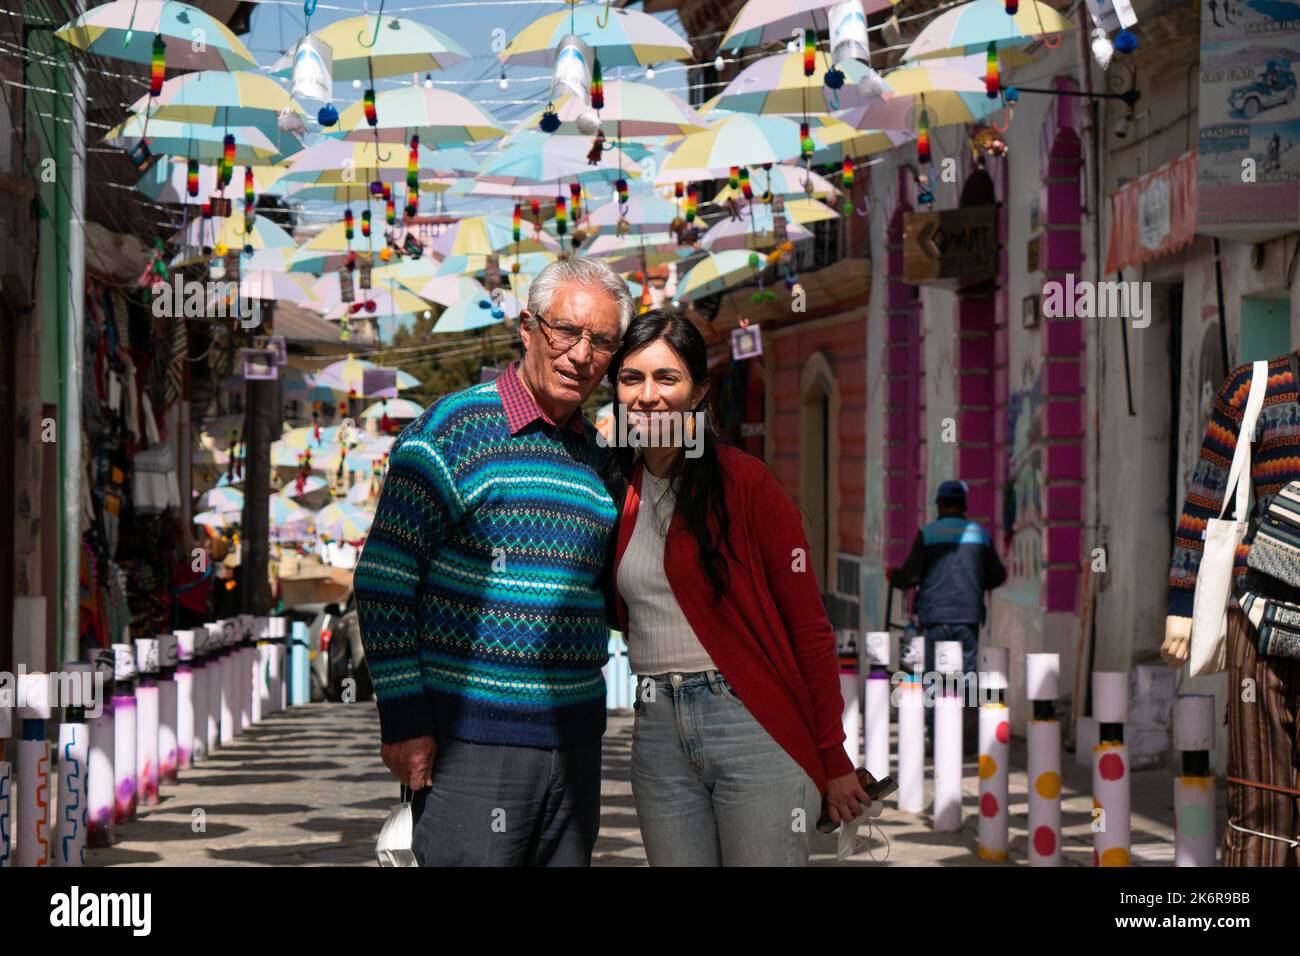 Die junge schwarzhaarige bolivianische Frau und ein älterer grauhaariger peruanischer Mann, der eine Brille trägt, posieren auf einer Straße, die mit Regenschirmen am Himmel gesäumt ist Stockfoto